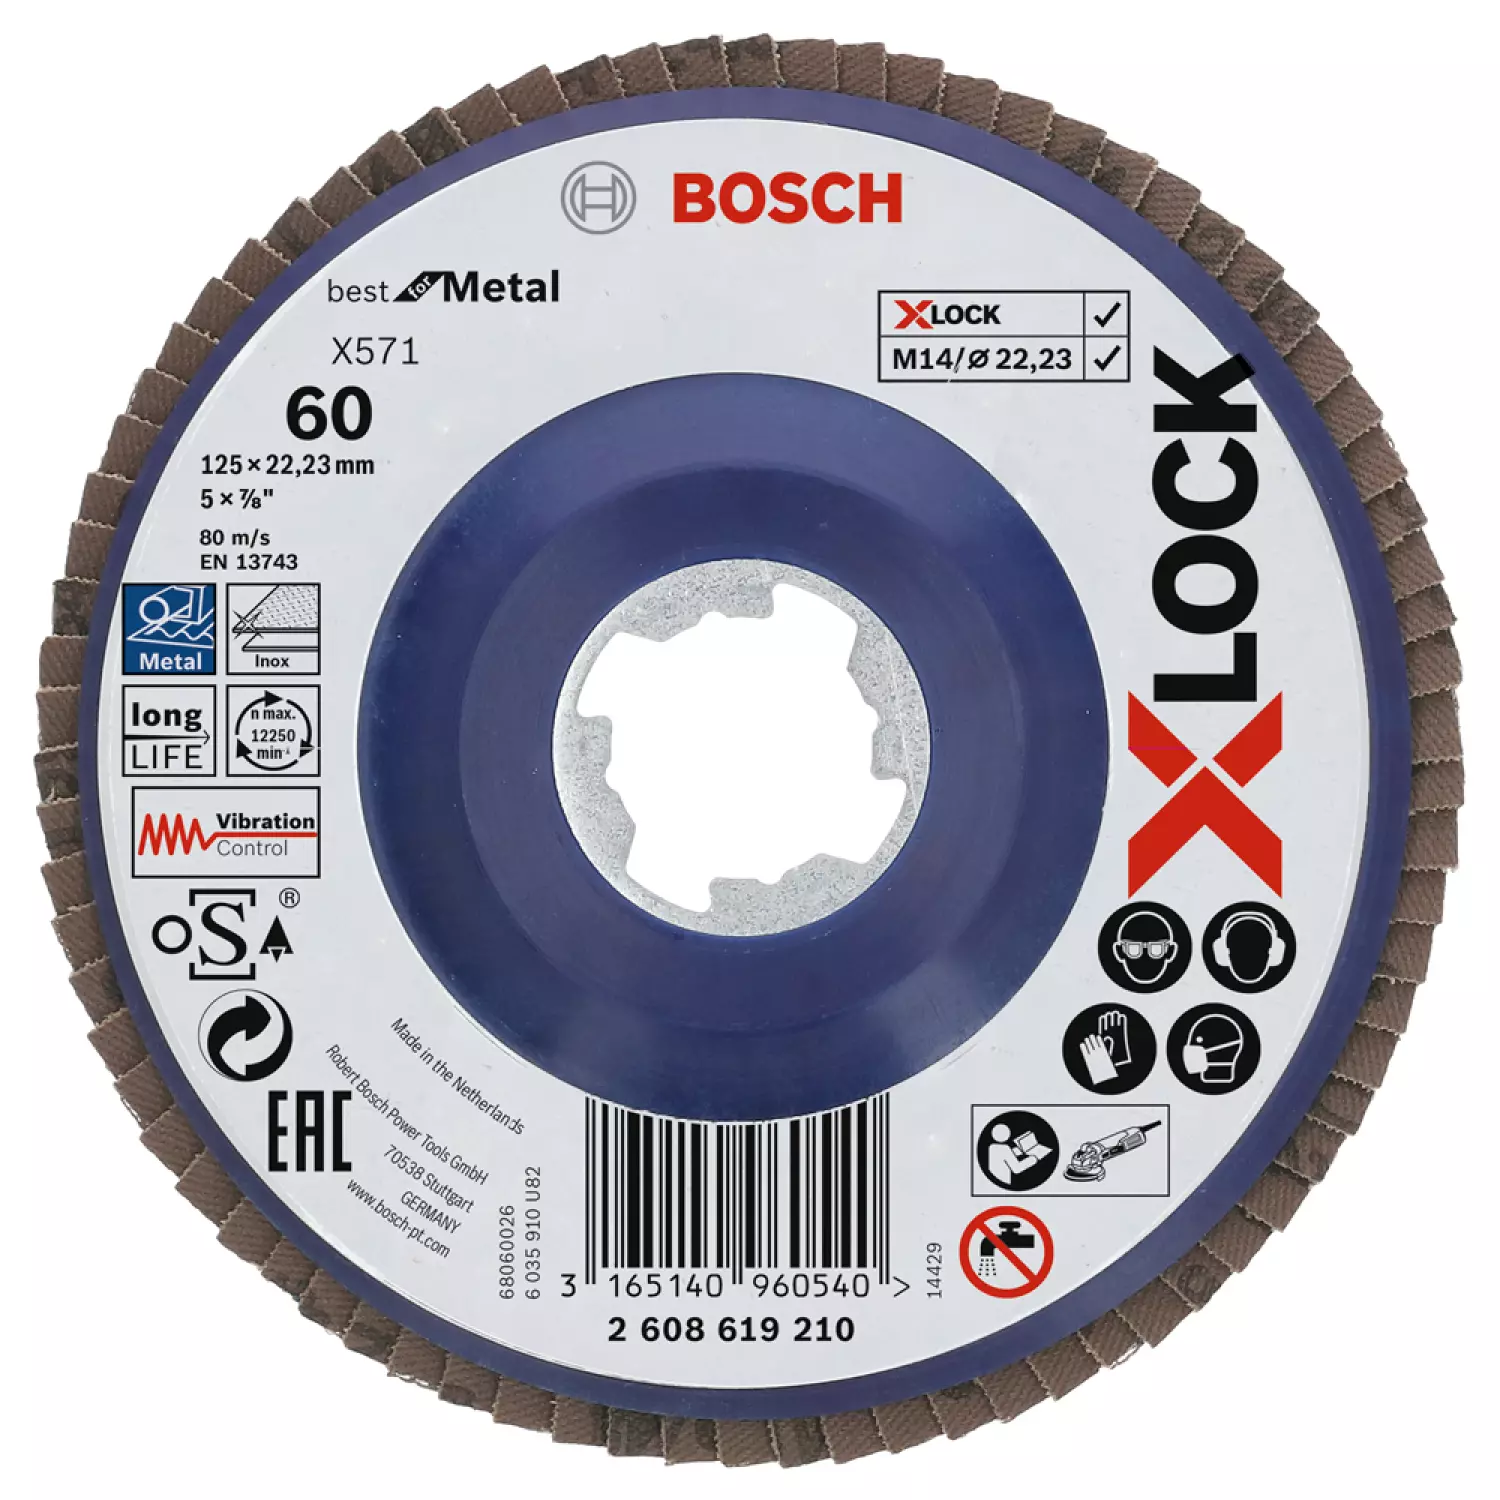 Bosch 2608619210 - X-LOCK disque à lamelles Best for Metal recht, plastique, Ø125mm, G 60, X571-image